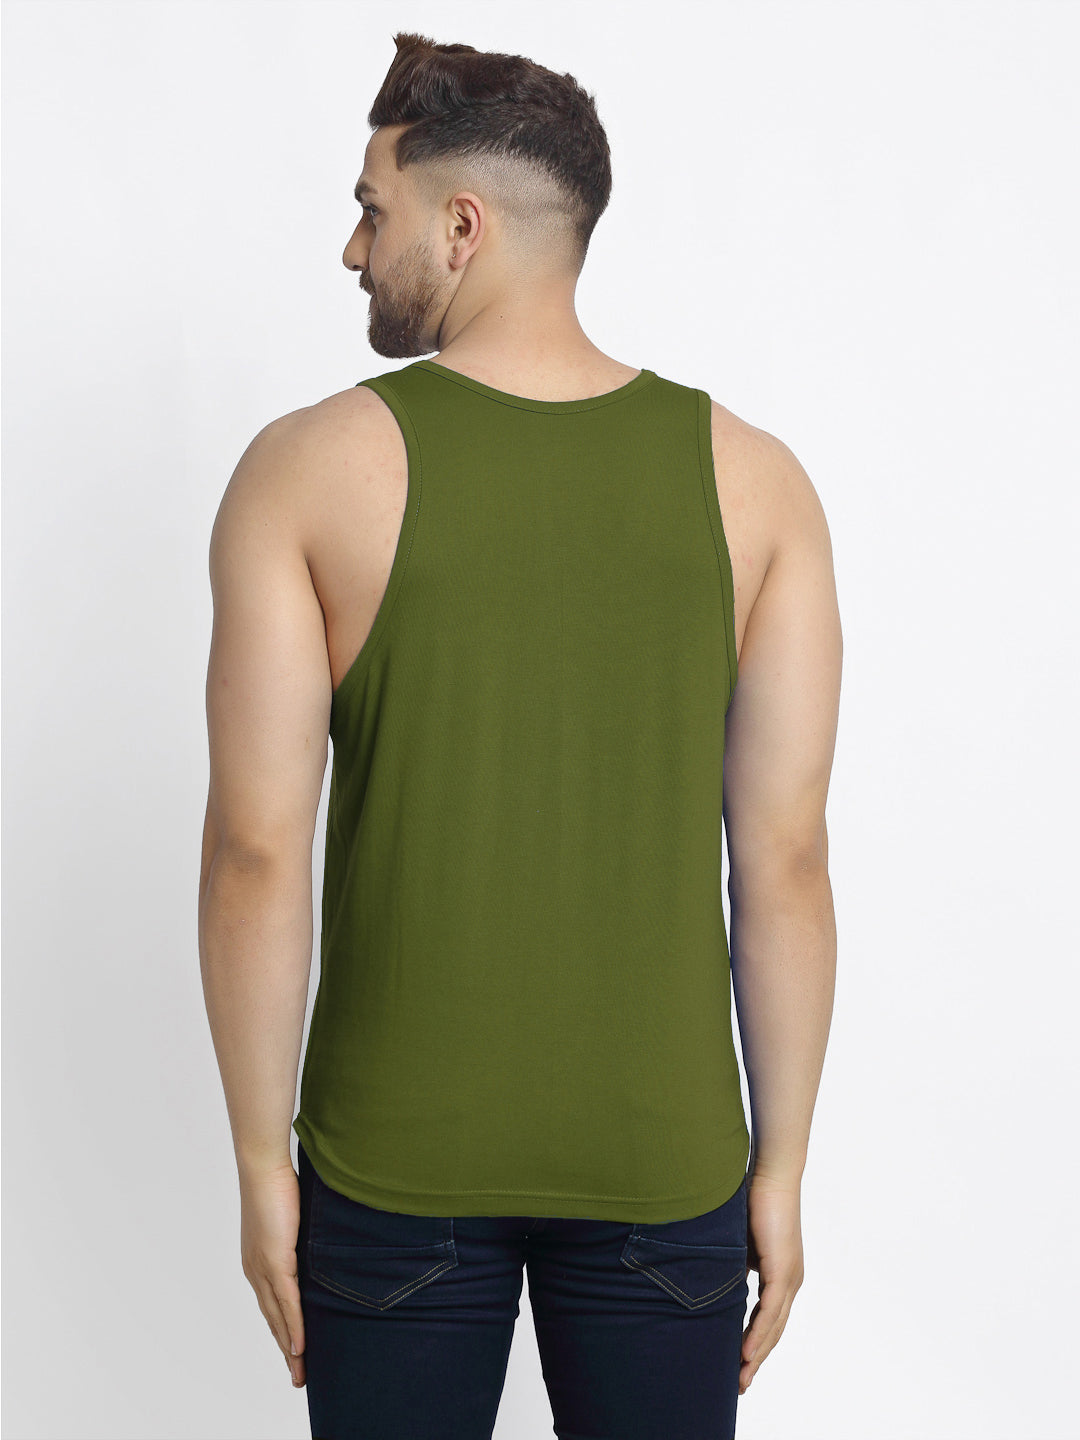 Men's Pack of 2 White & Olive Green Printed Gym vest - Friskers